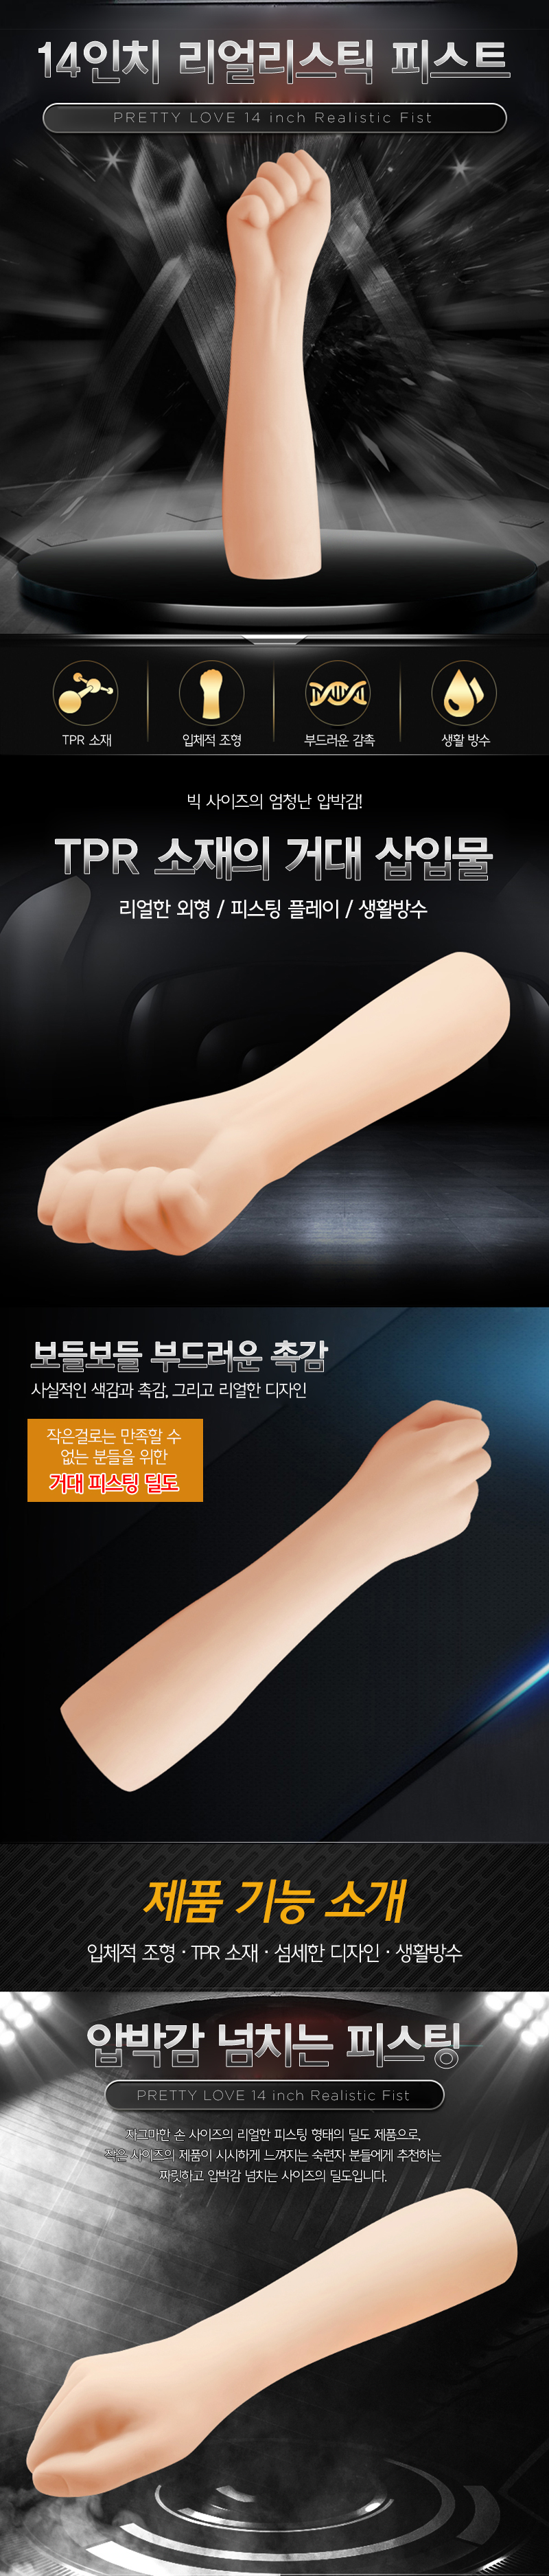 [피스팅 딜도] 14인치 리얼리스틱 피스트(14 inch Realistic Fist)